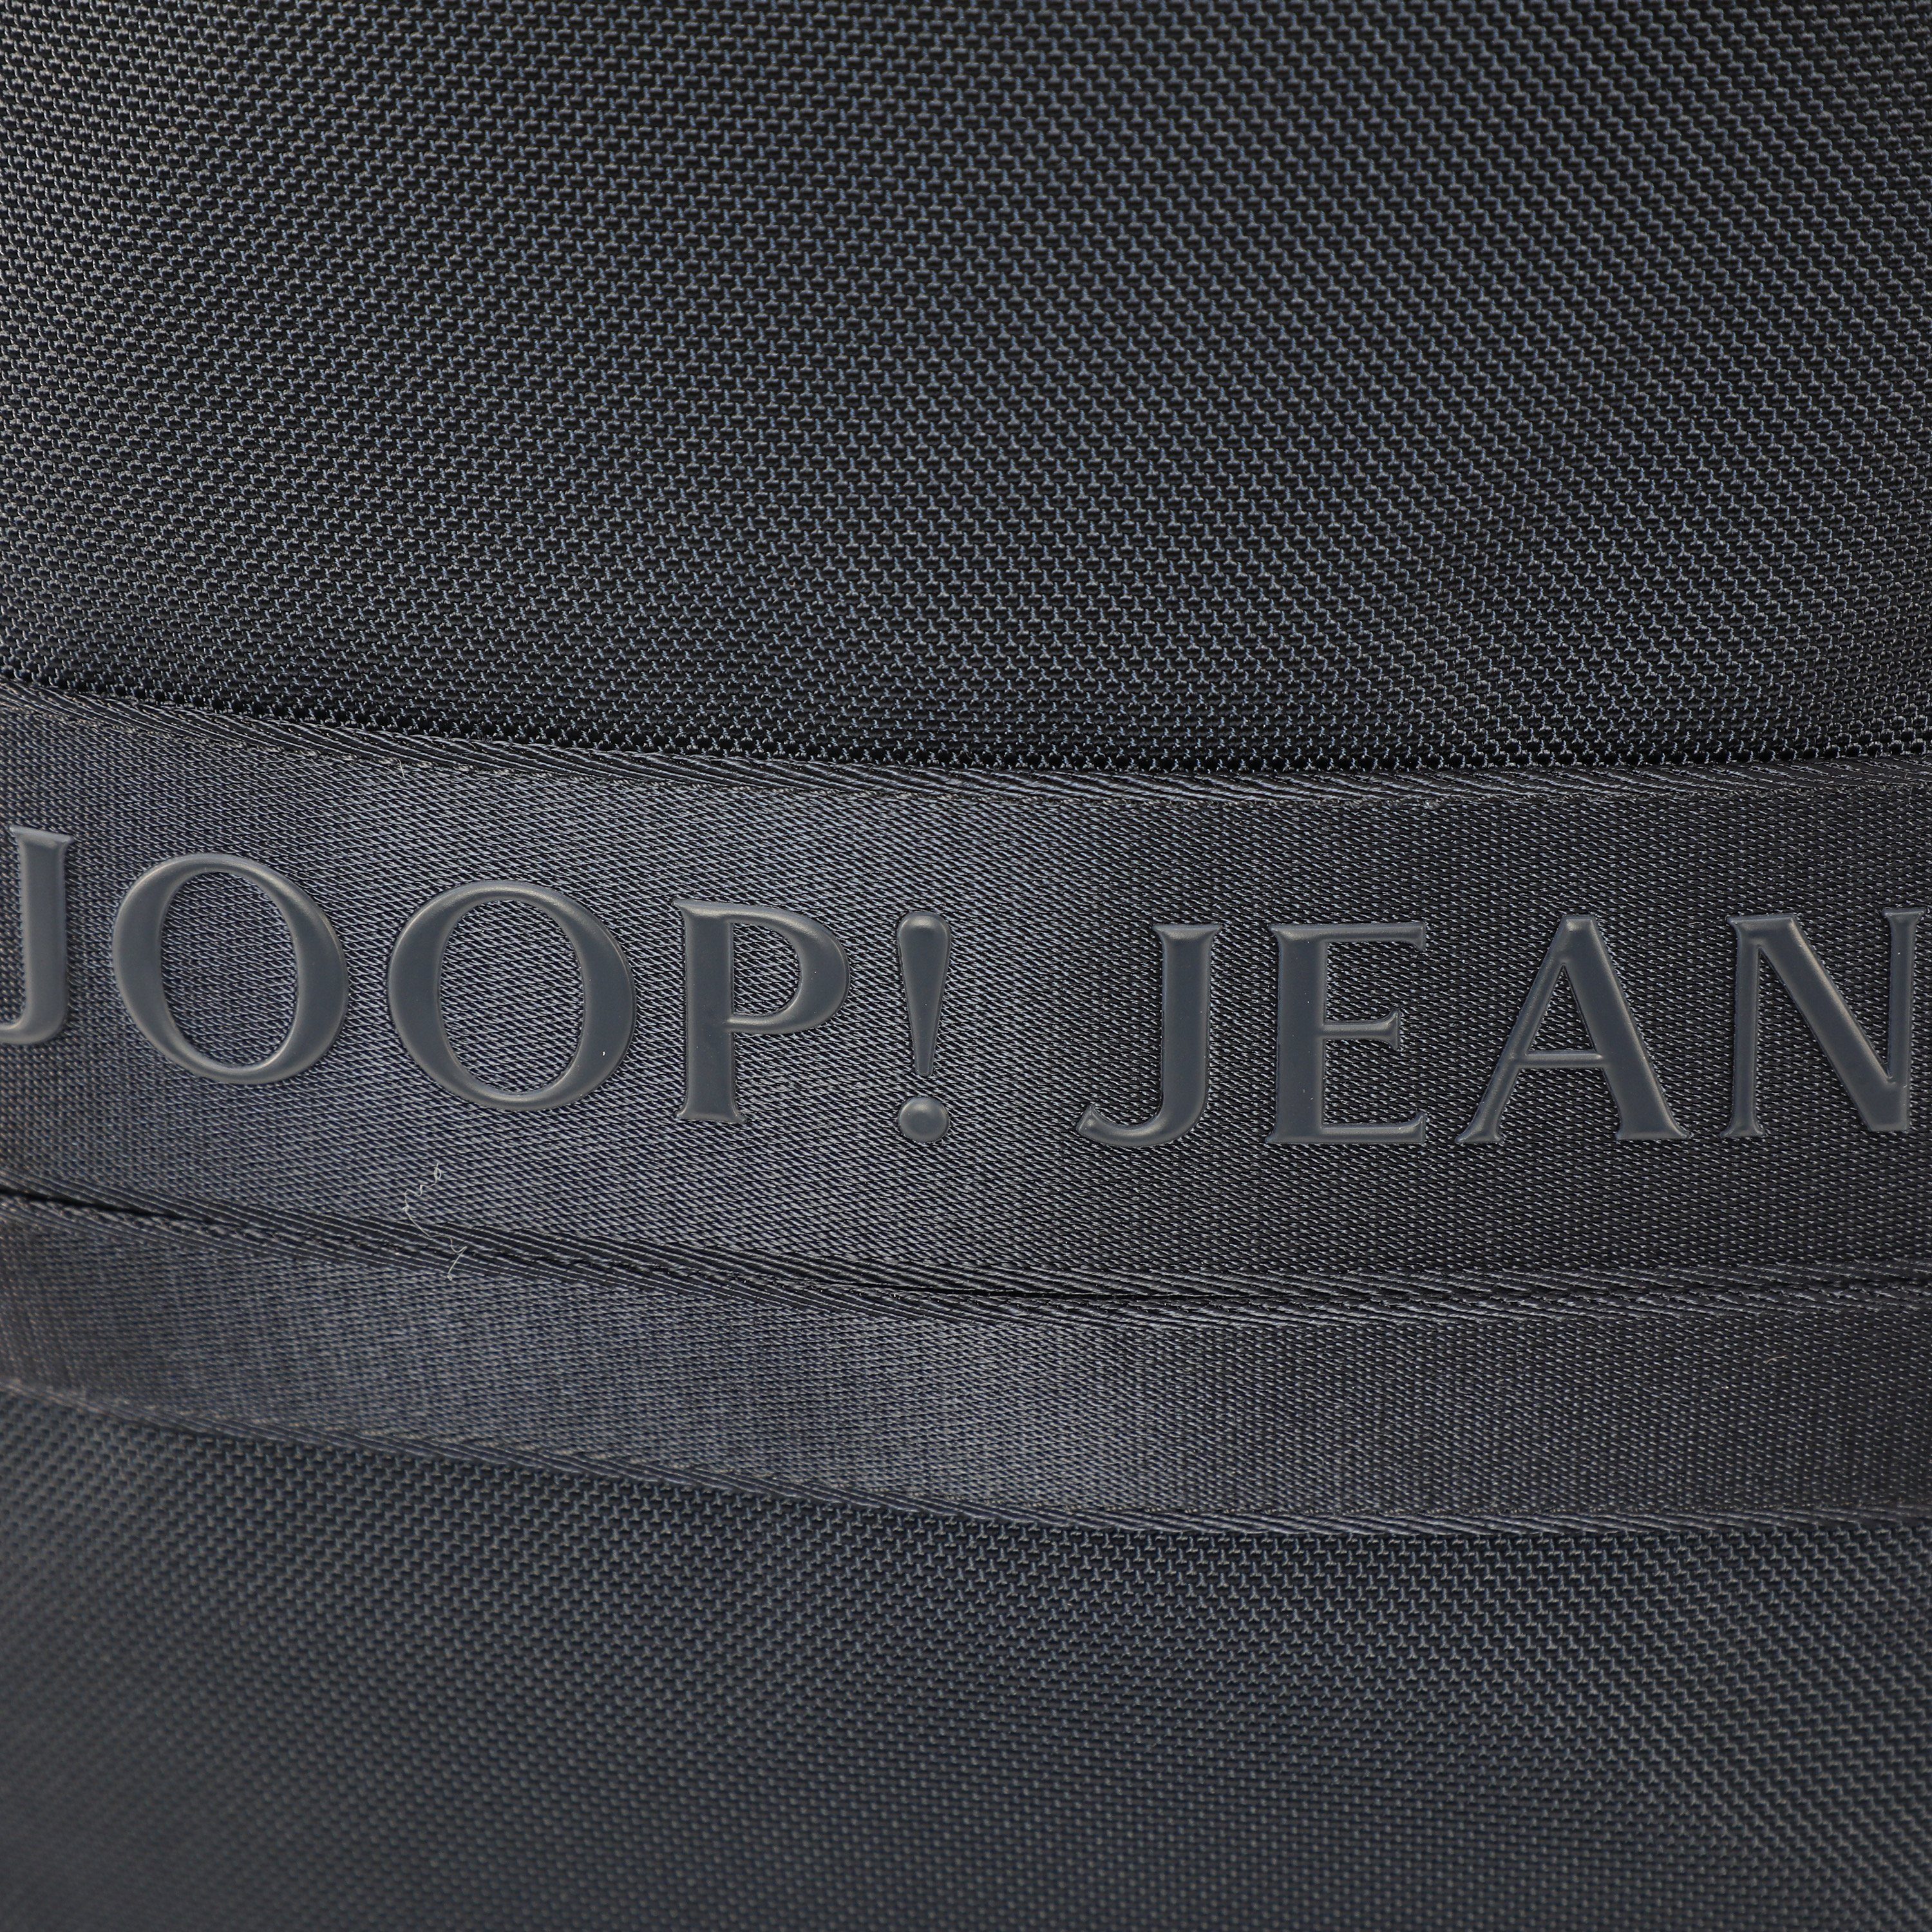 falk darkblue Cityrucksack backpack modica svz, Reißverschluss-Vortasche mit Jeans Joop